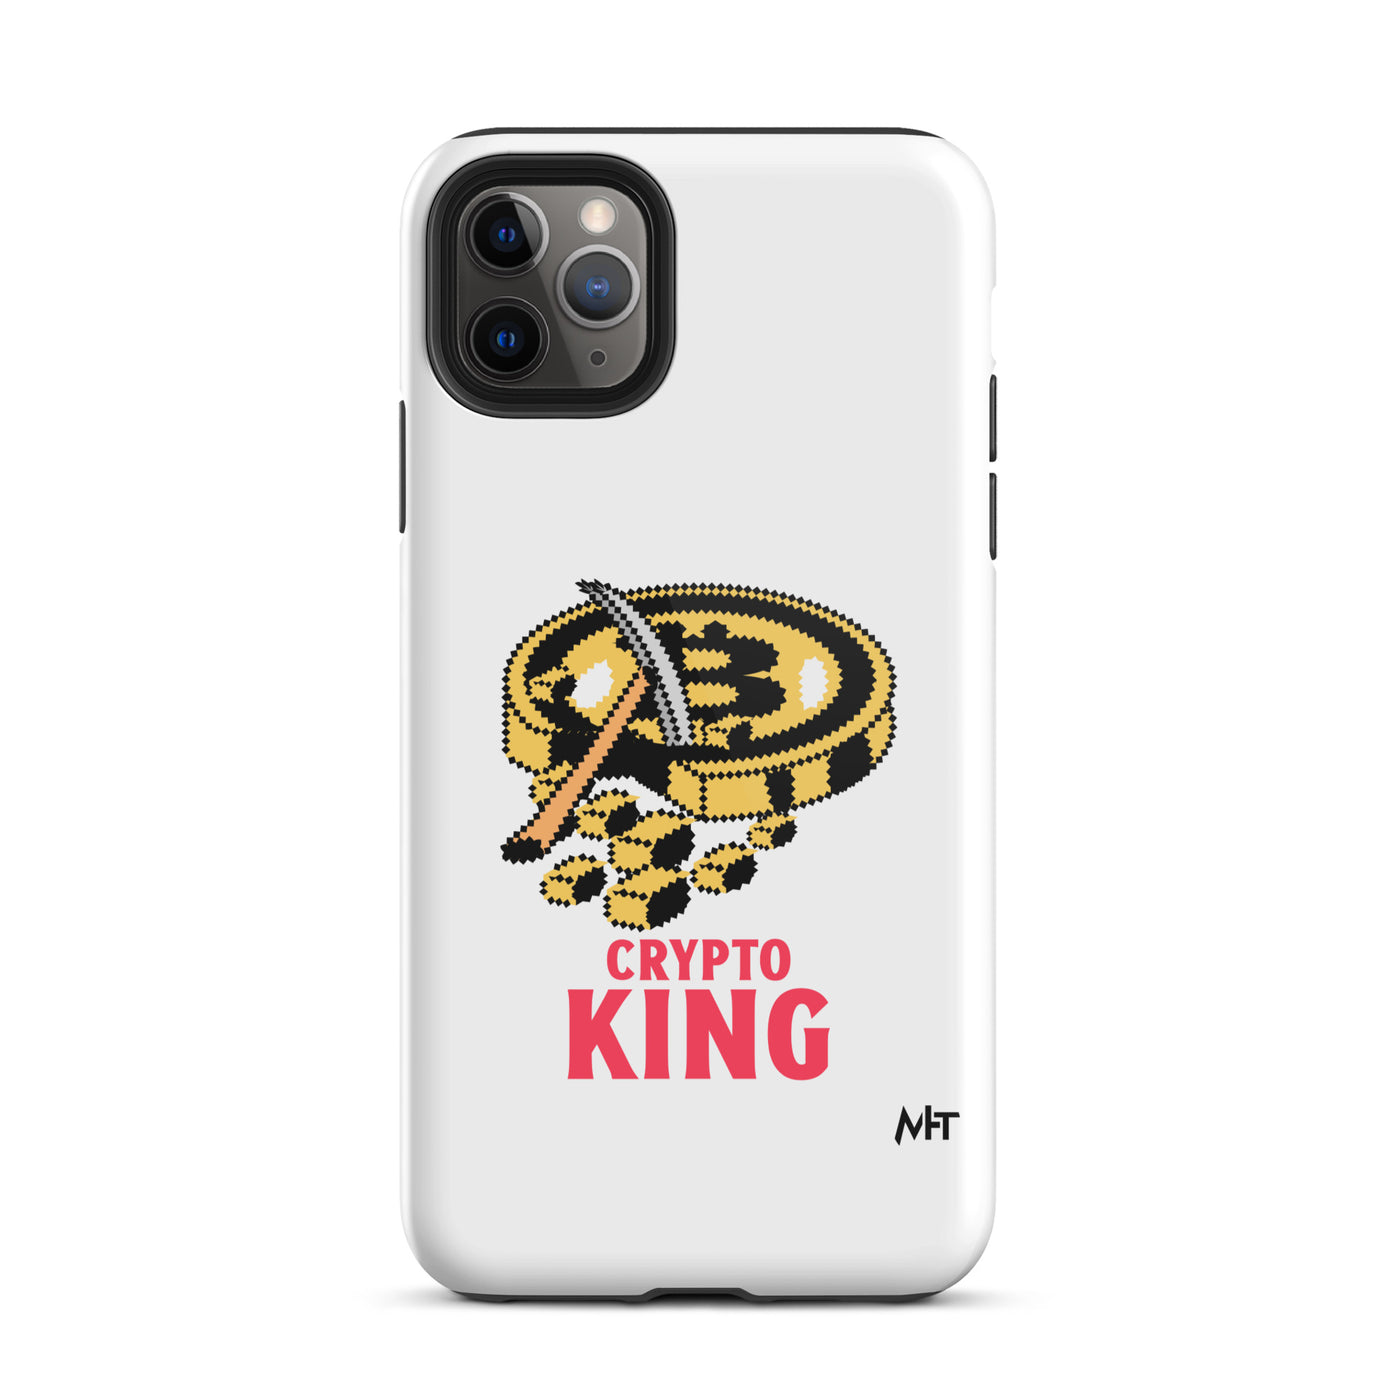 Crypto King - Tough iPhone case